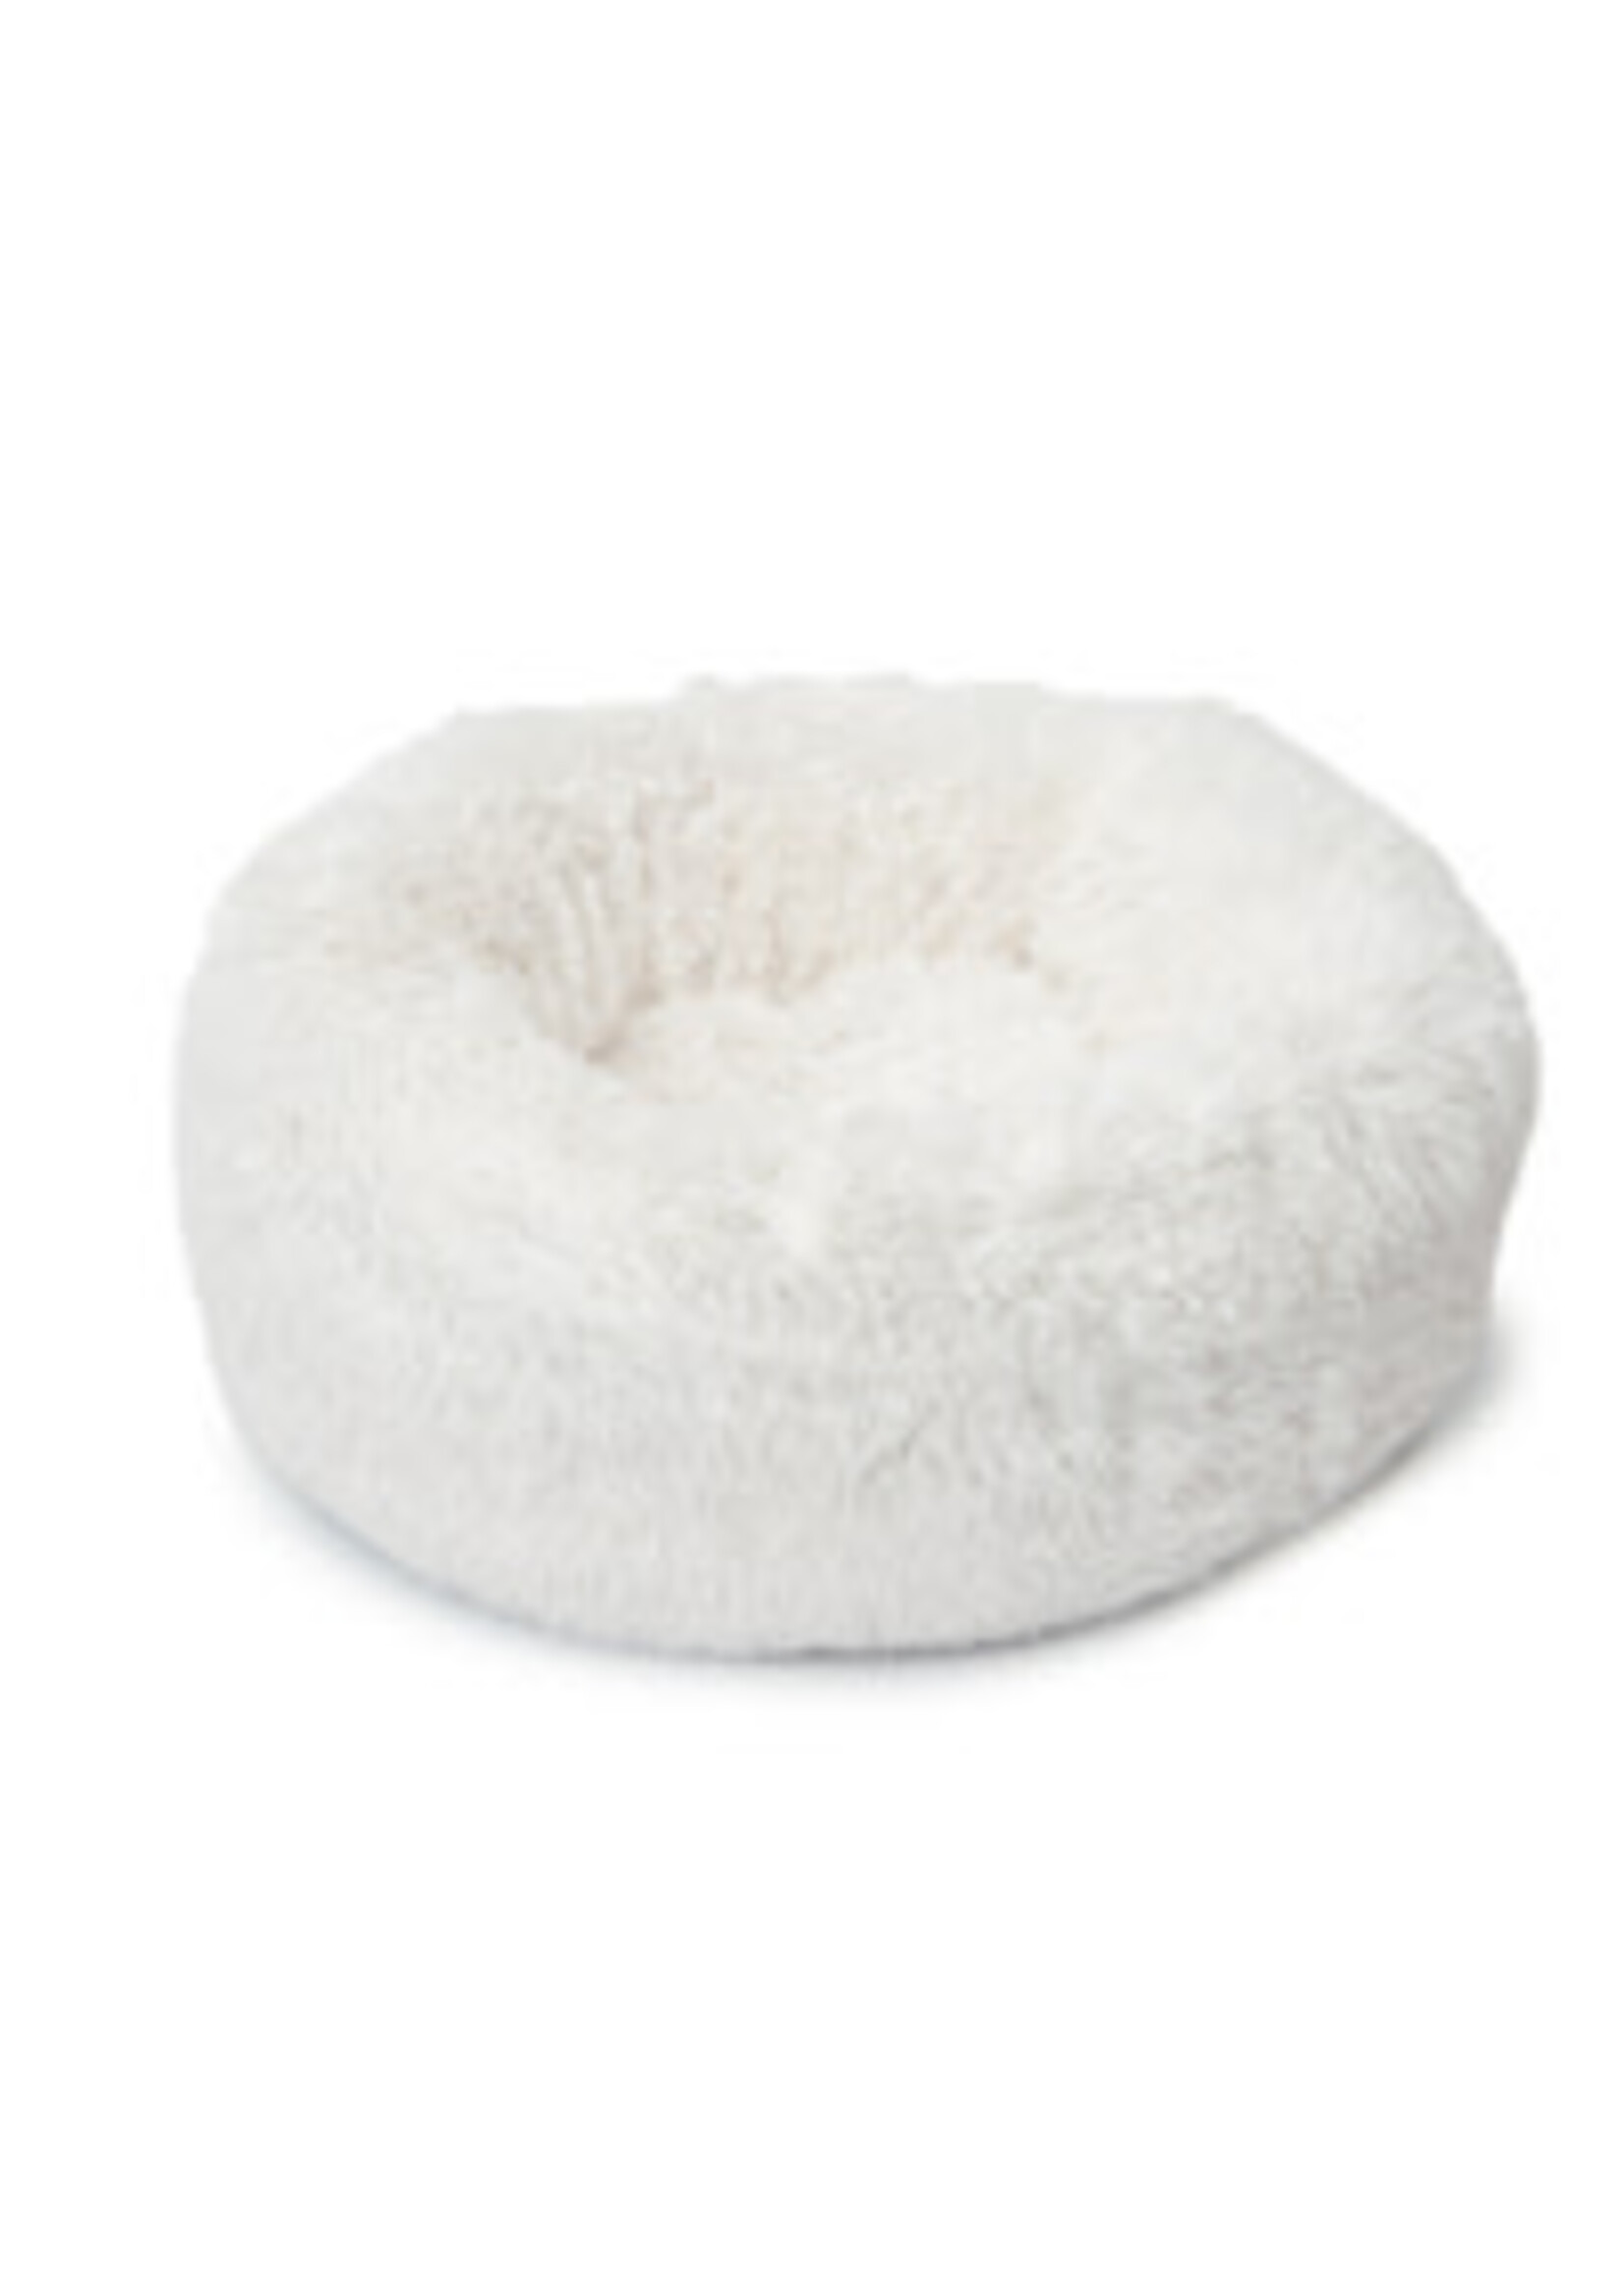 Catit Catit - Fluffy Bed - White - 60 cm (20 in) diameter